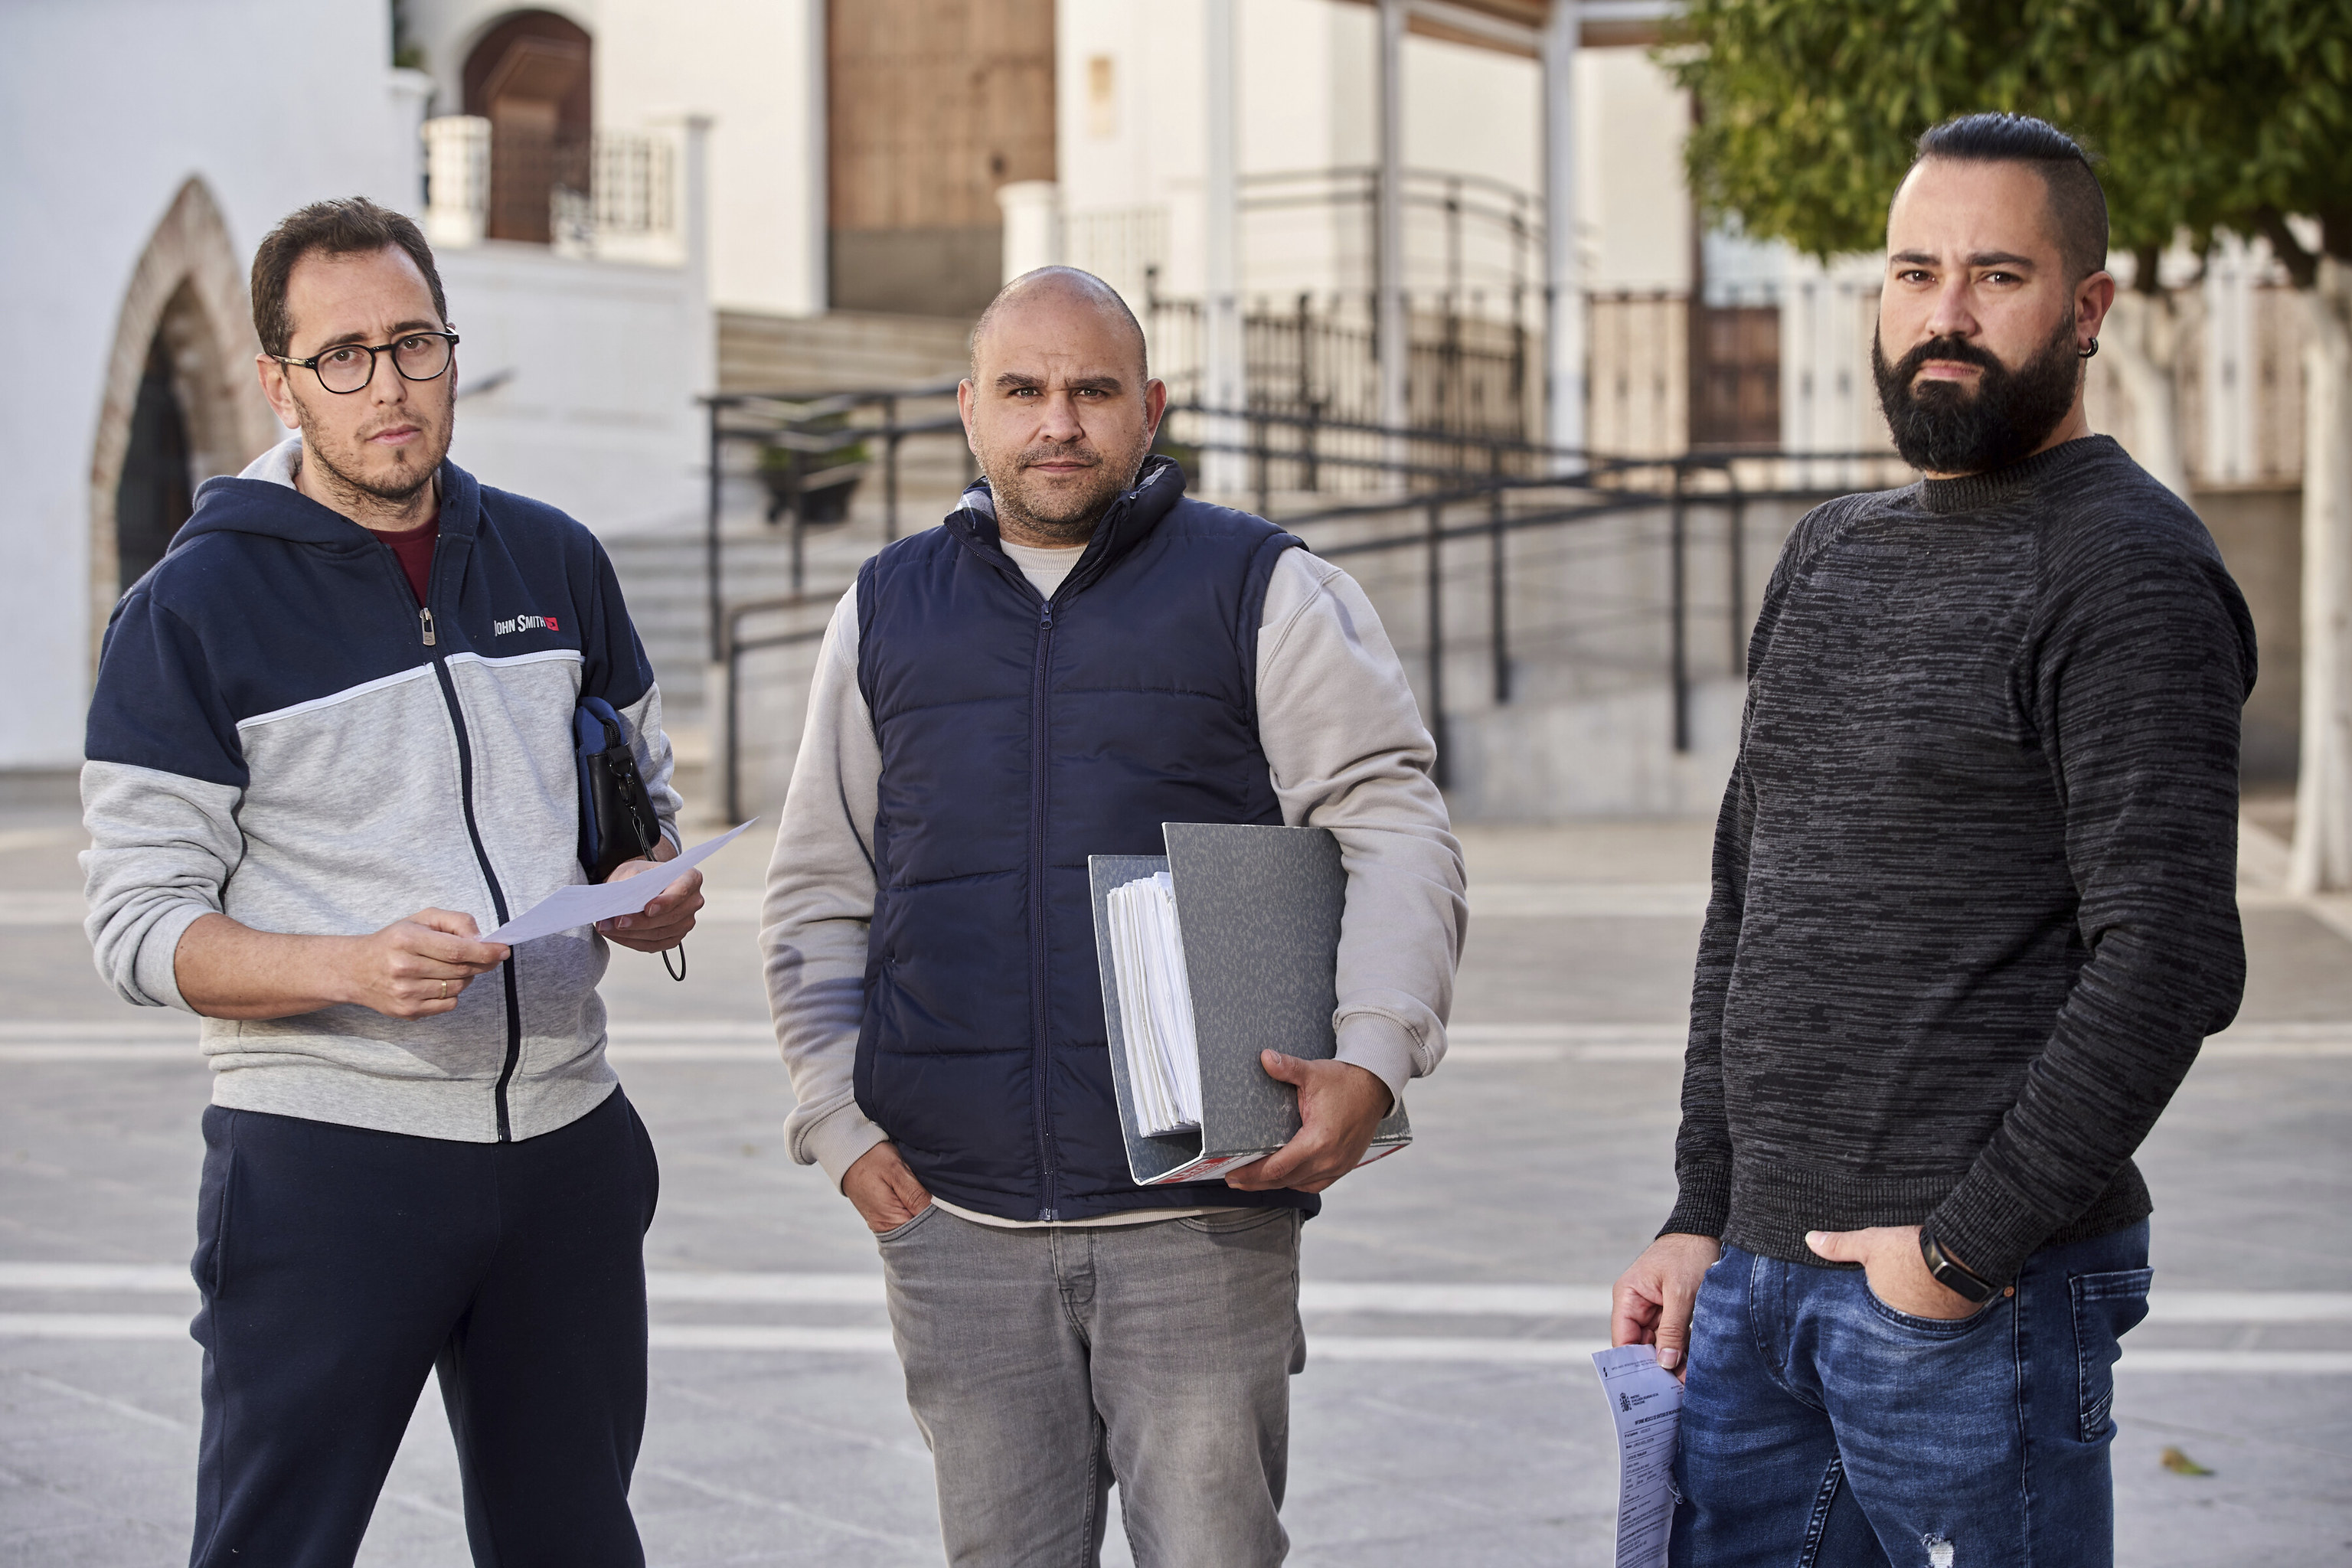 Francisco Javier Cardeosa, Miguel Crdoba y ngel Castellanos, tres de los trabajadores afectados por la silicosis que sealan a Cosentino.